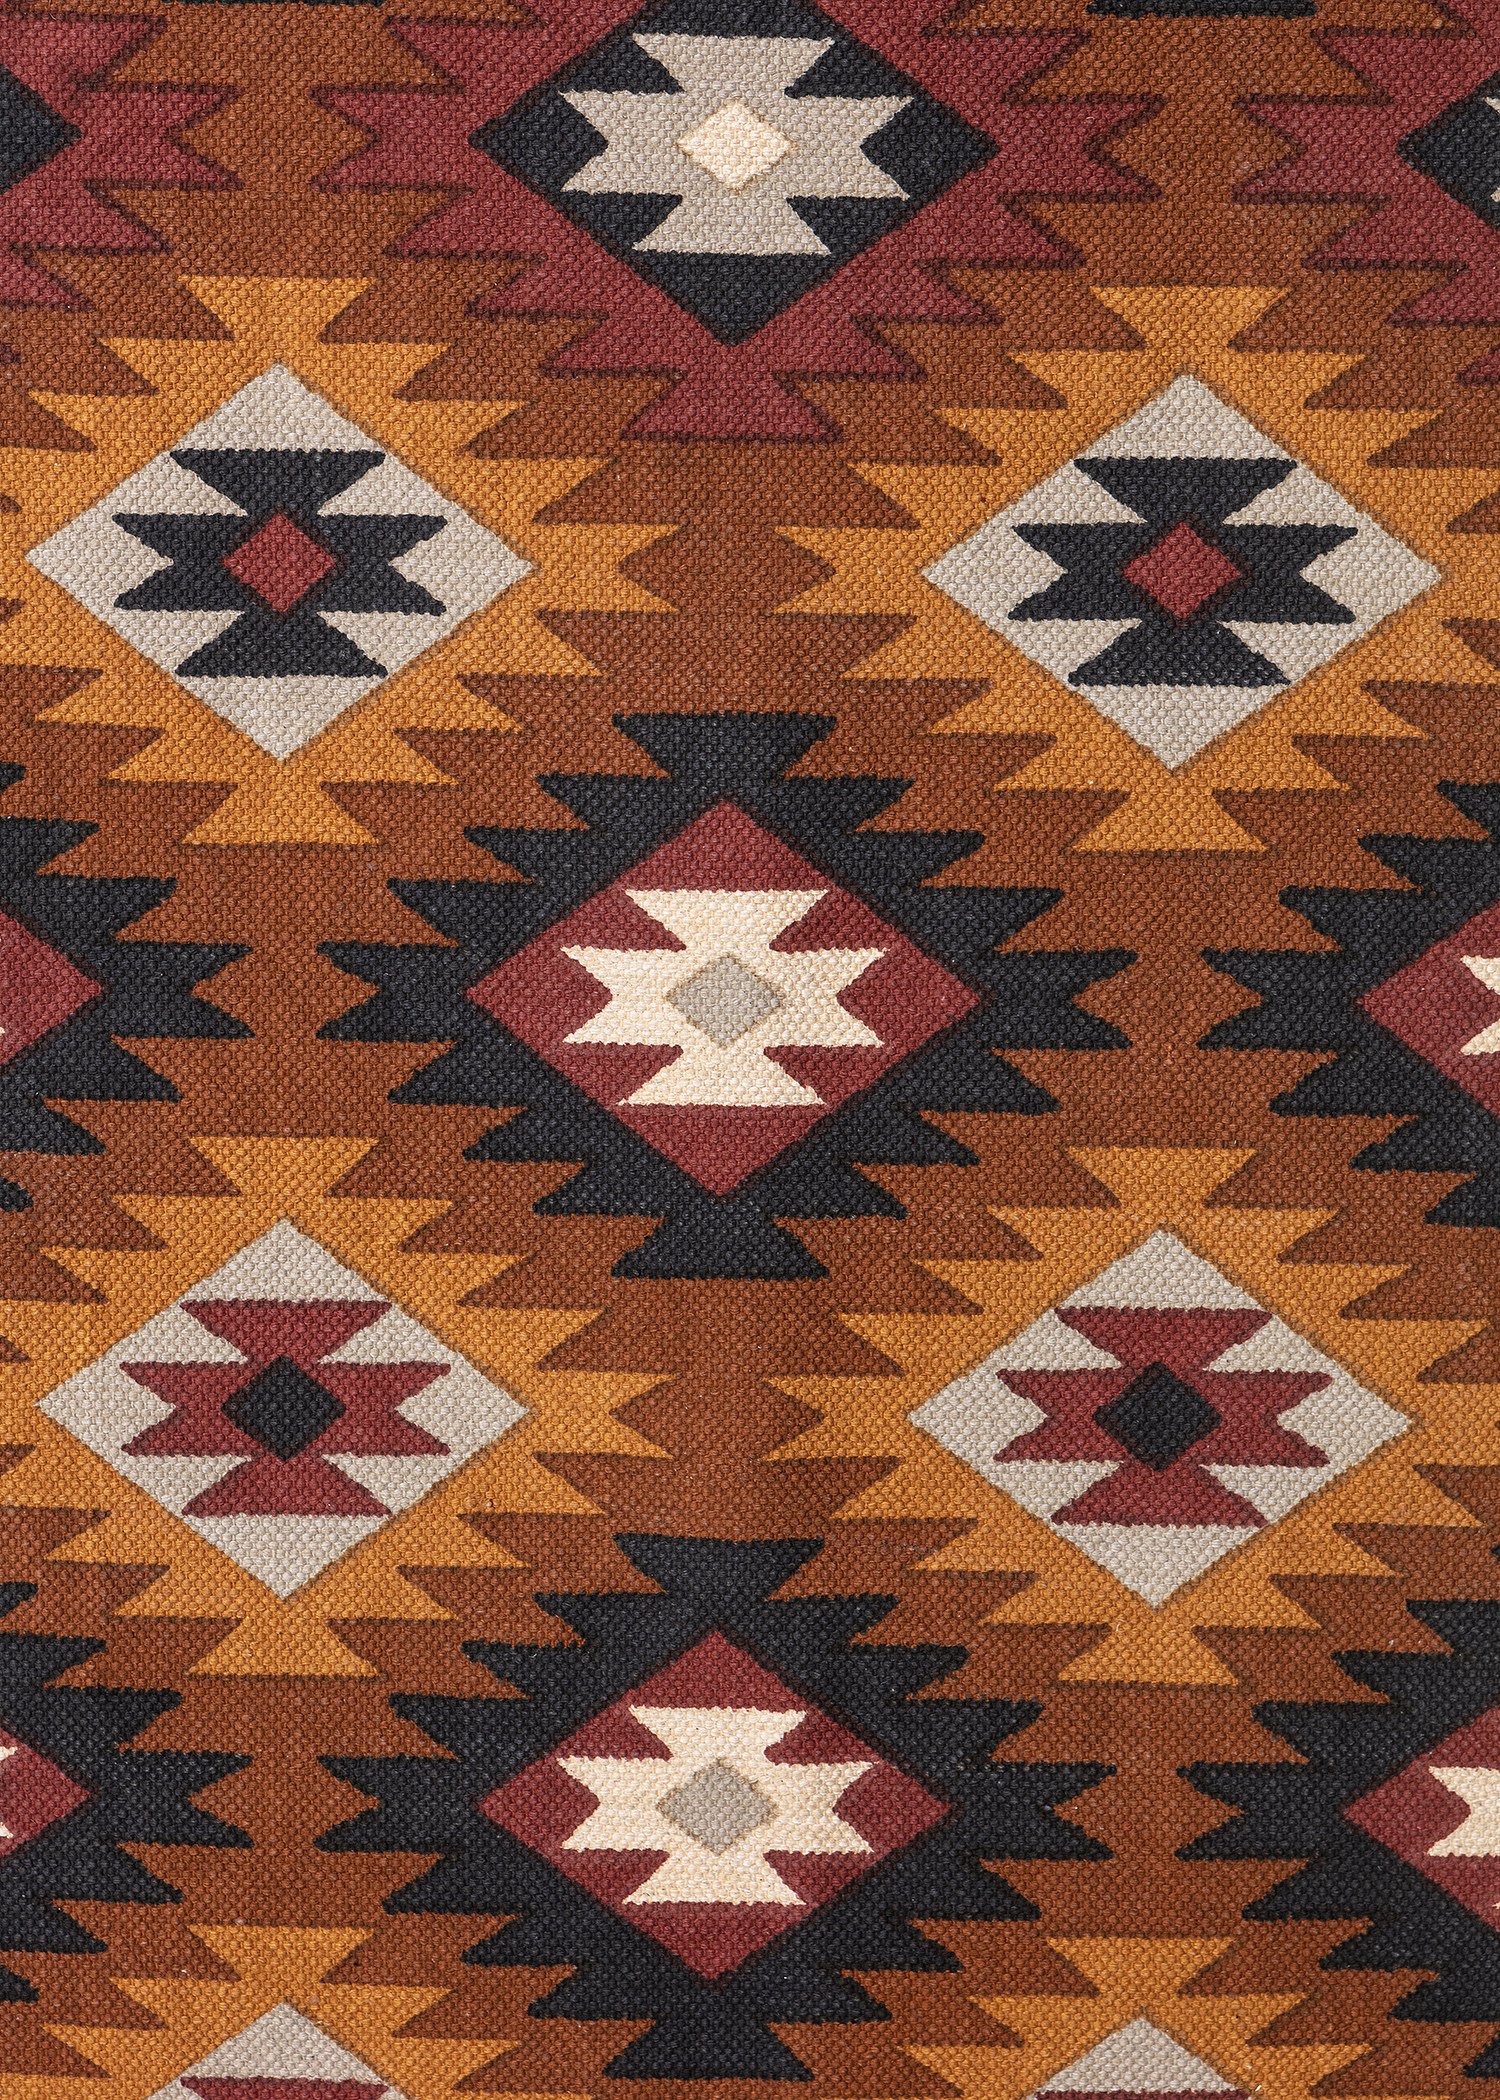 Multicolour cotton rug 70x200 cm Image 1